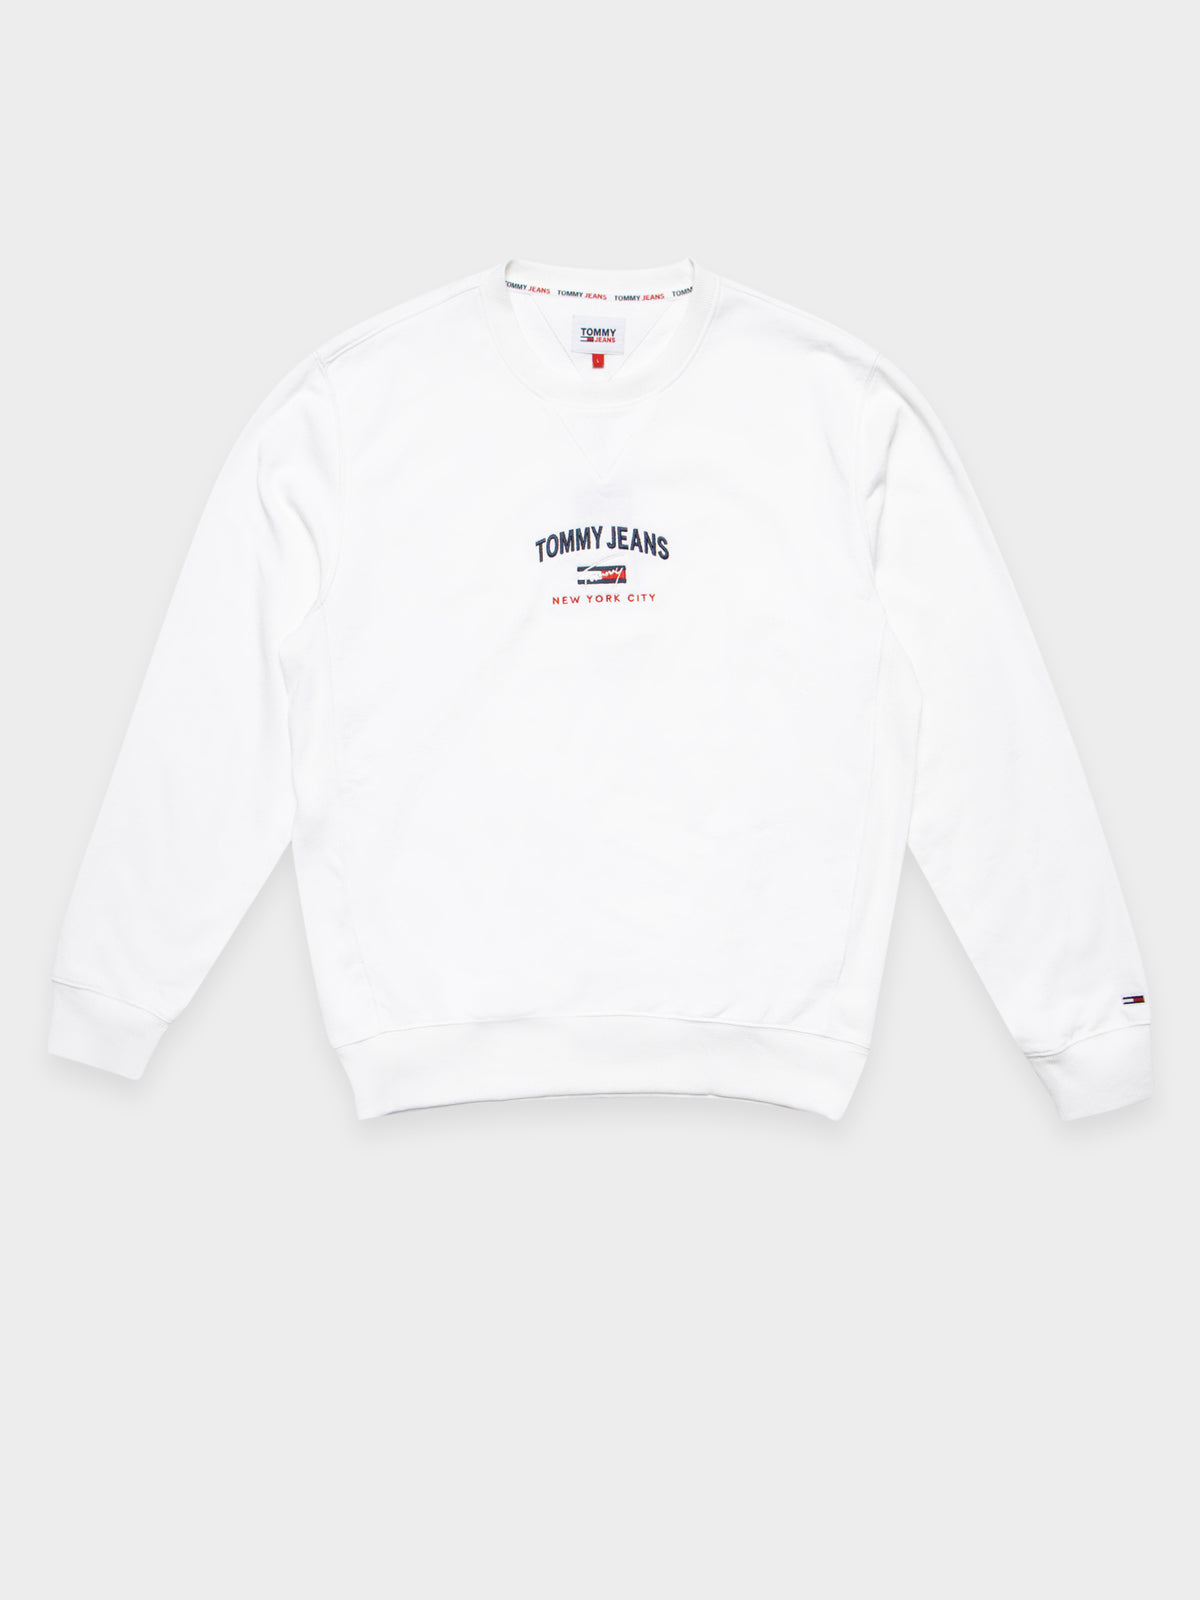 Signature Timeless Sweatshirt in White